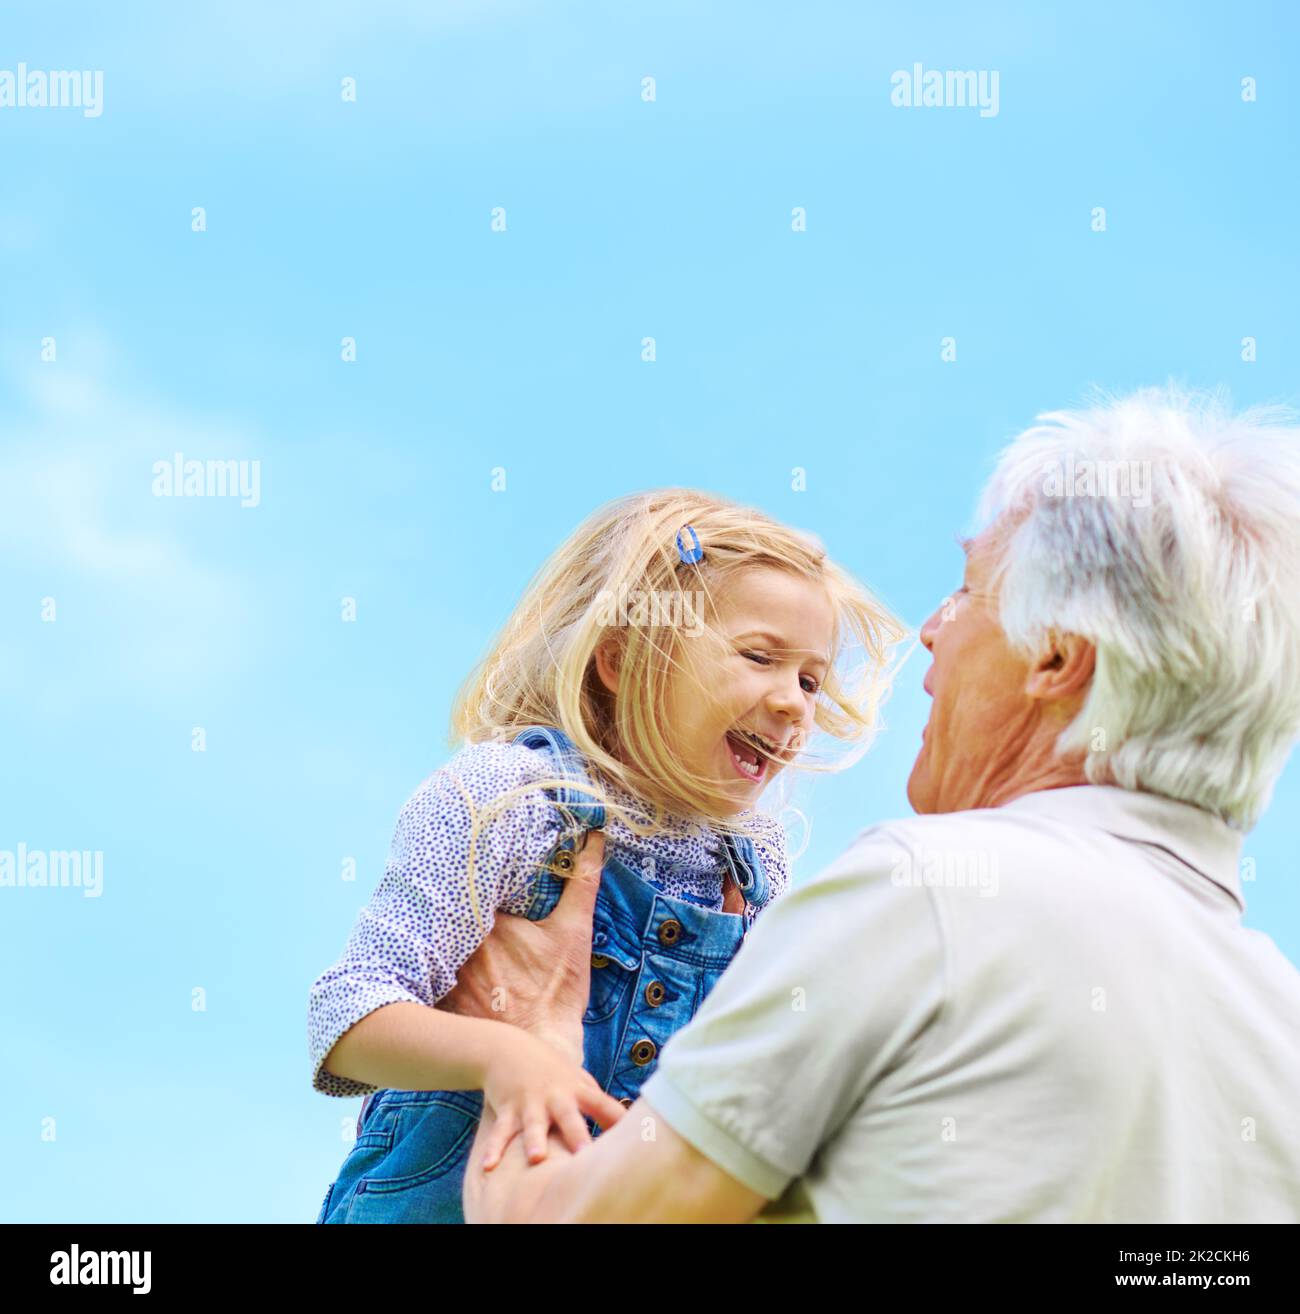 Grand-père sait toujours comment faire rire elle. Photo d'un grand-père heureux soulevant sa petite-fille. Banque D'Images